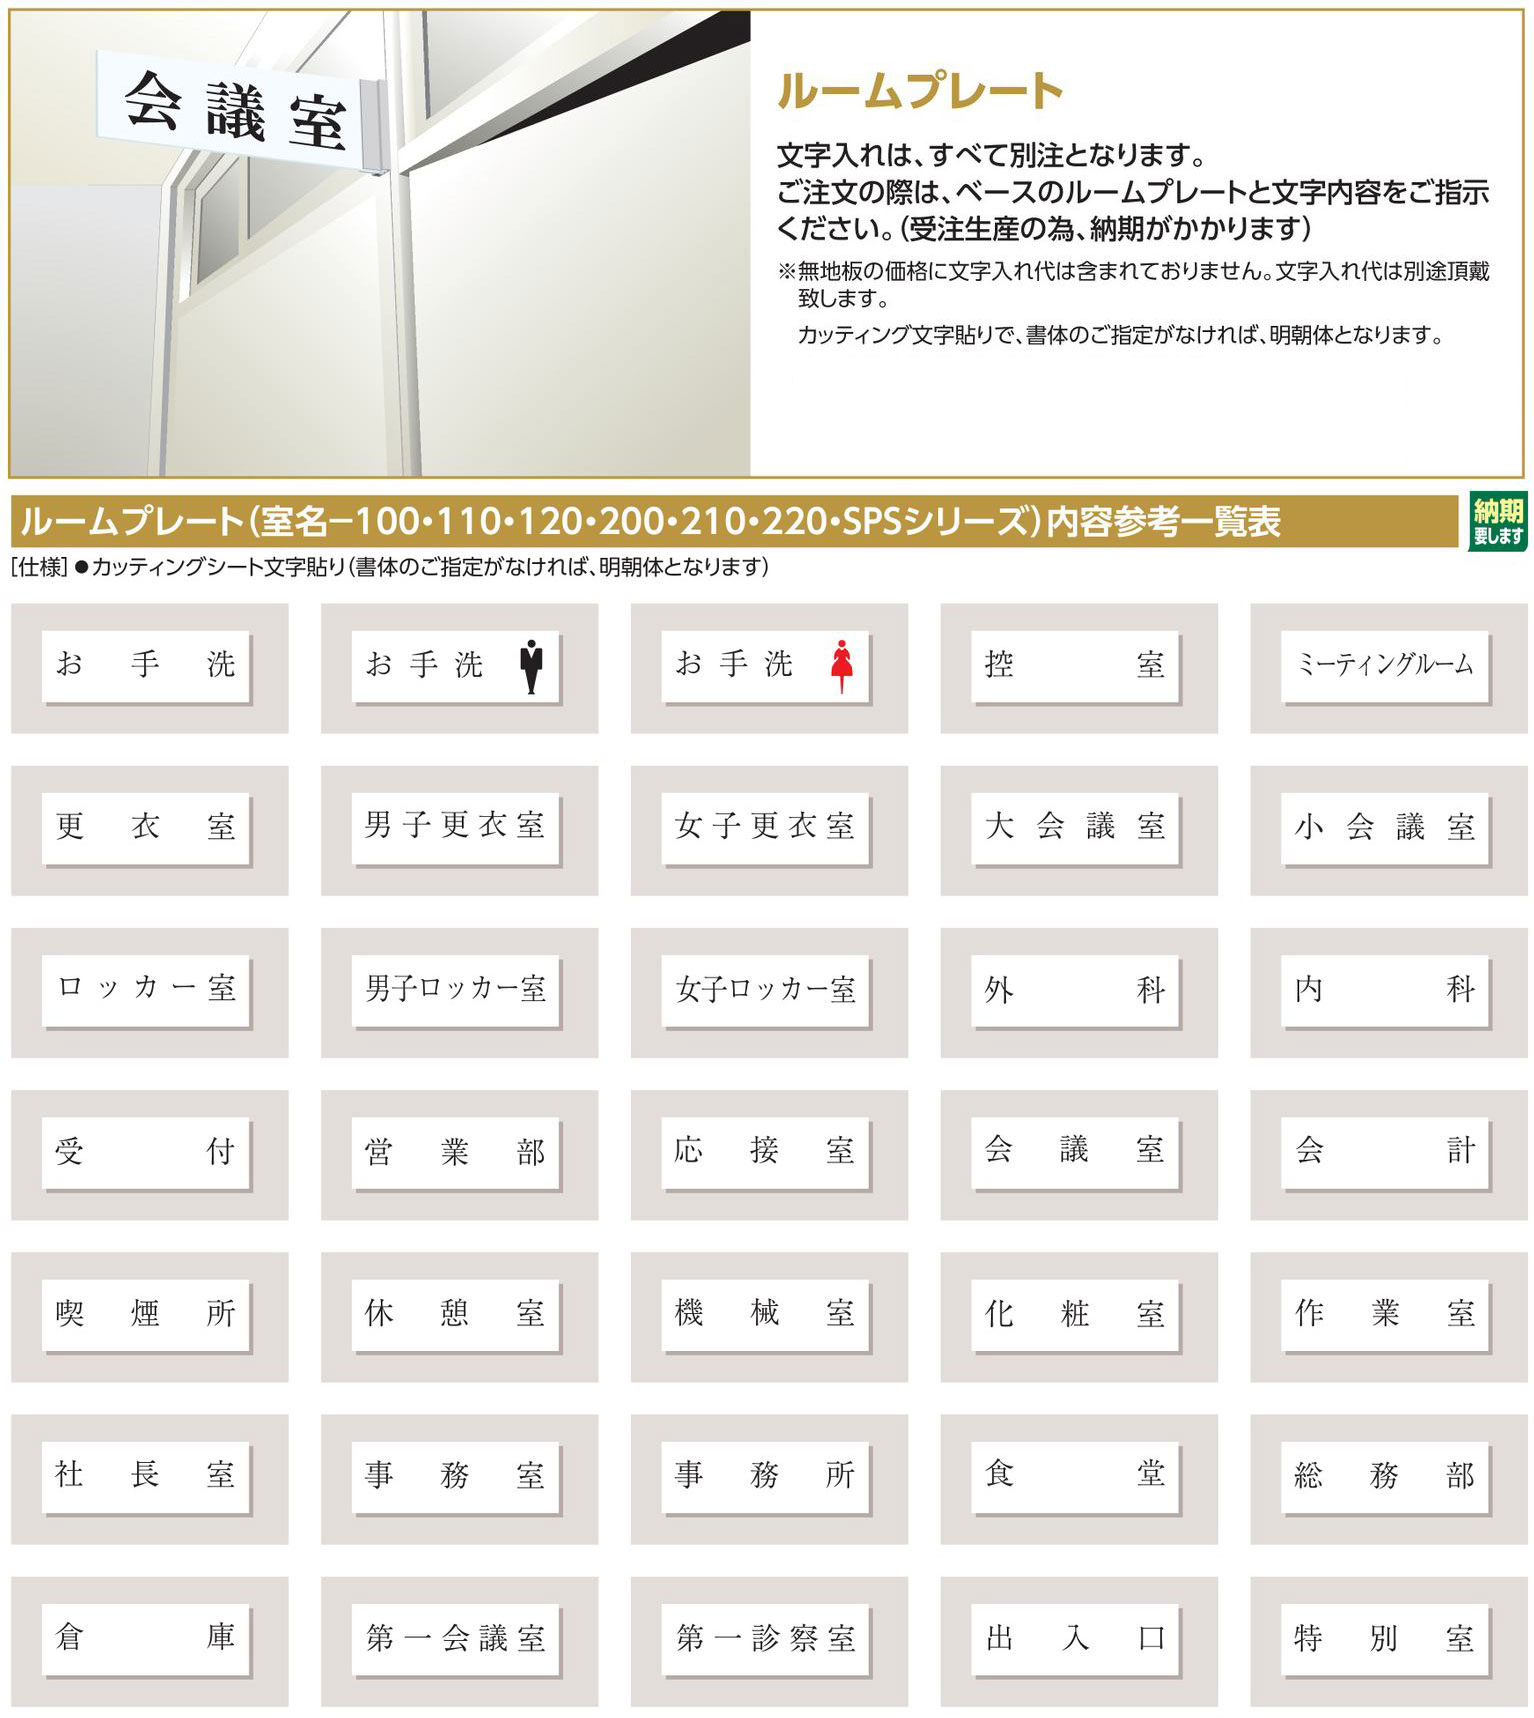 ルームプレート(貼り付けタイプ) 215300 室名-200（300）アルミ無地,（安全標識・安全用品 日本緑十字社）,の通販  詳細情報,電設資材・電線・ケーブル・安全用品 ネット通販 Watanabe 電設資材 電線 ケーブル ネット 通販 Watanabe